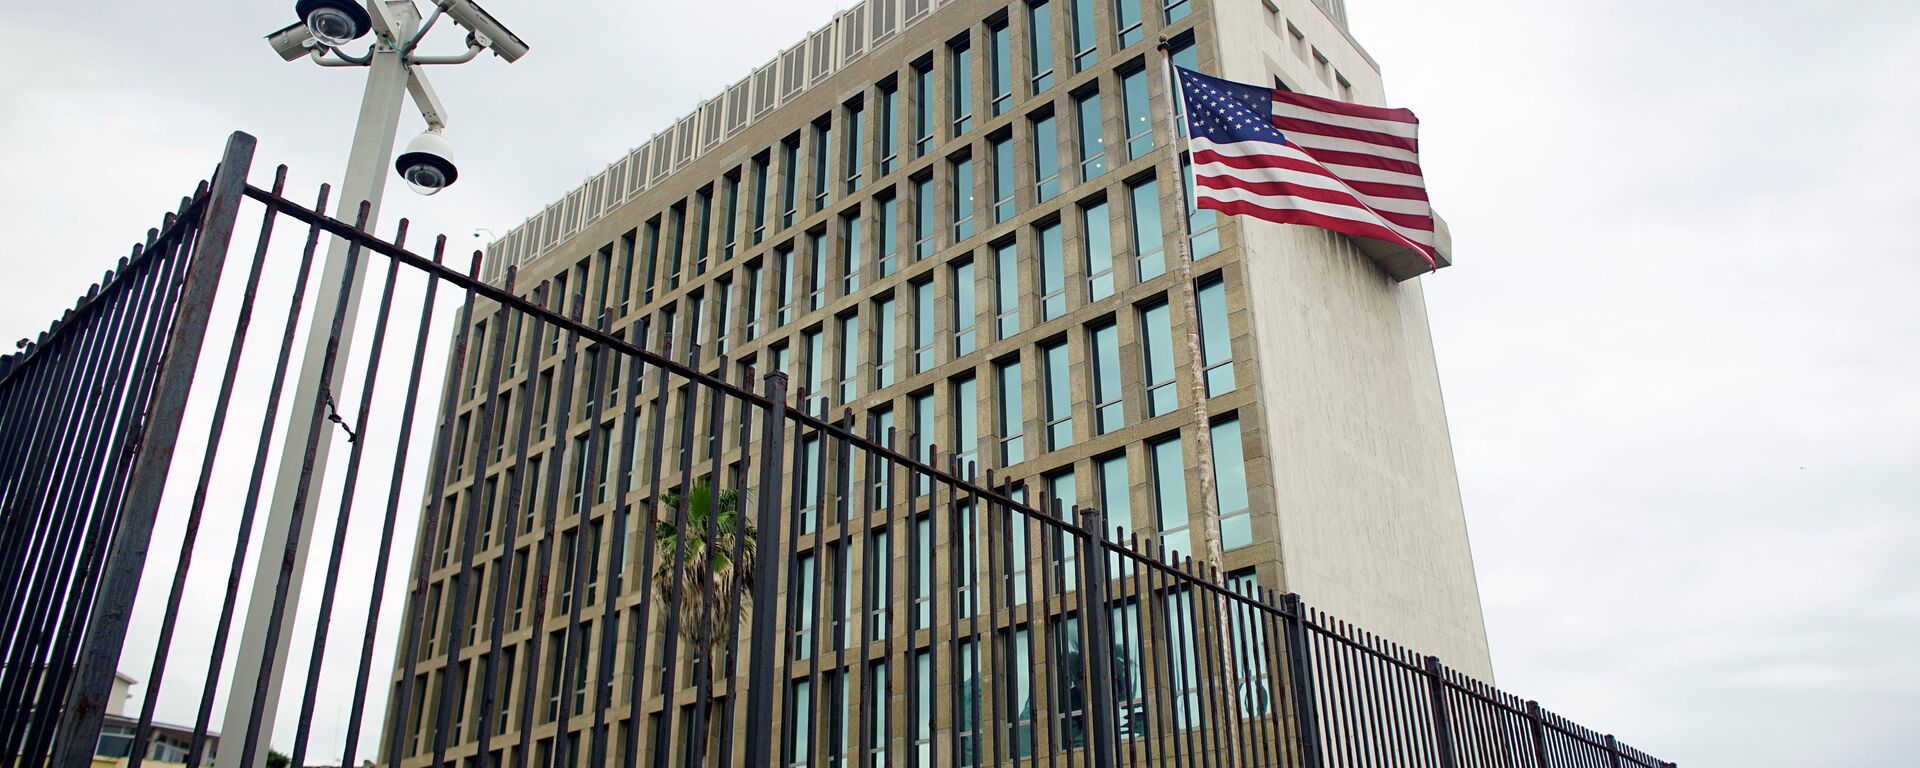 La embajada de EEUU en La Habana, Cuba - Sputnik Mundo, 1920, 15.09.2021